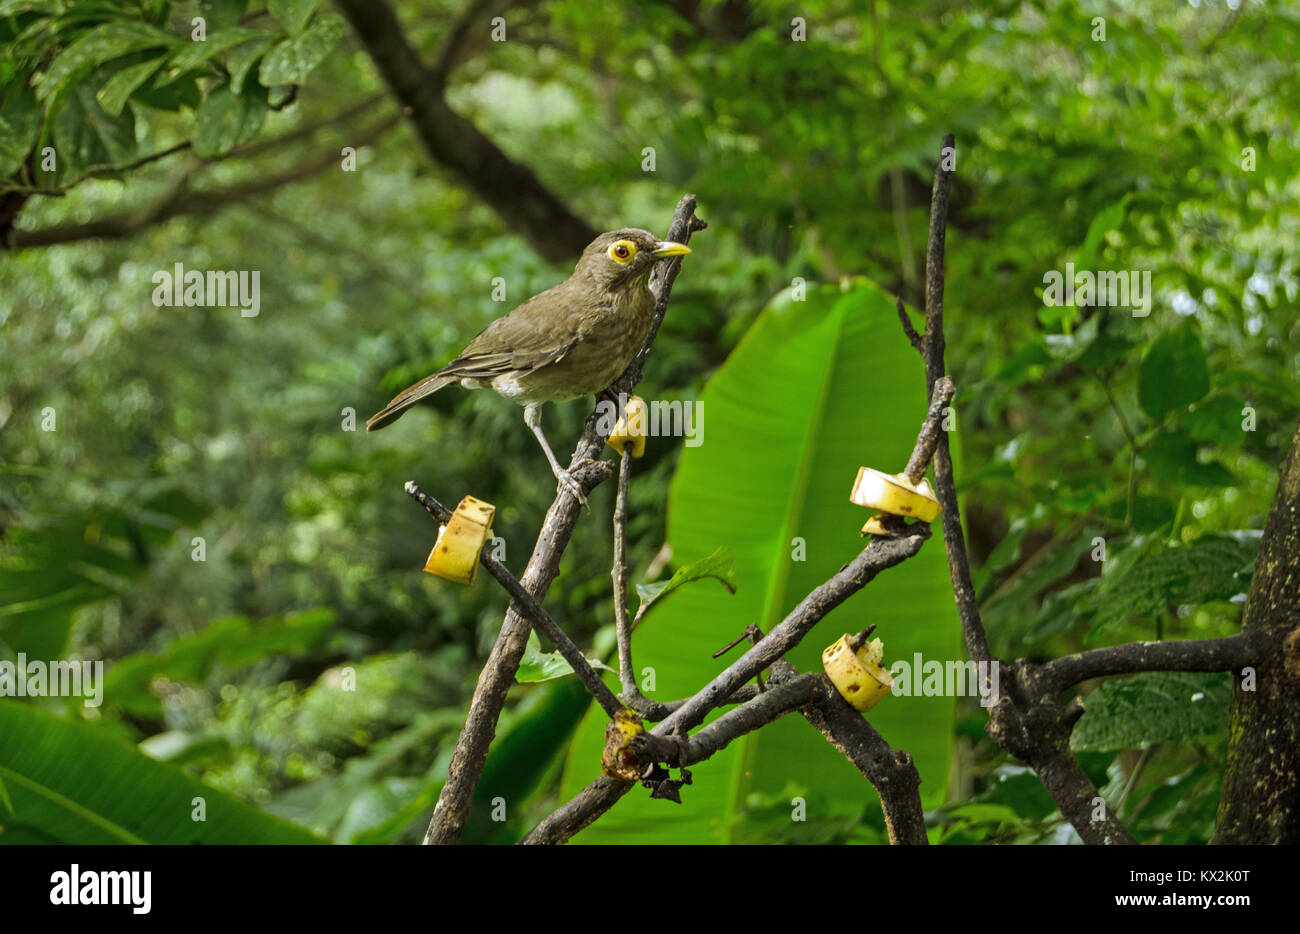 Ein brillenbär Thrush, lateinischer Name Turdus nudigenis, Pausen in die Kamera zu blicken, während Hackordnung auf bananenscheiben auf Branchen Links. Tropische Wald in Stockfoto